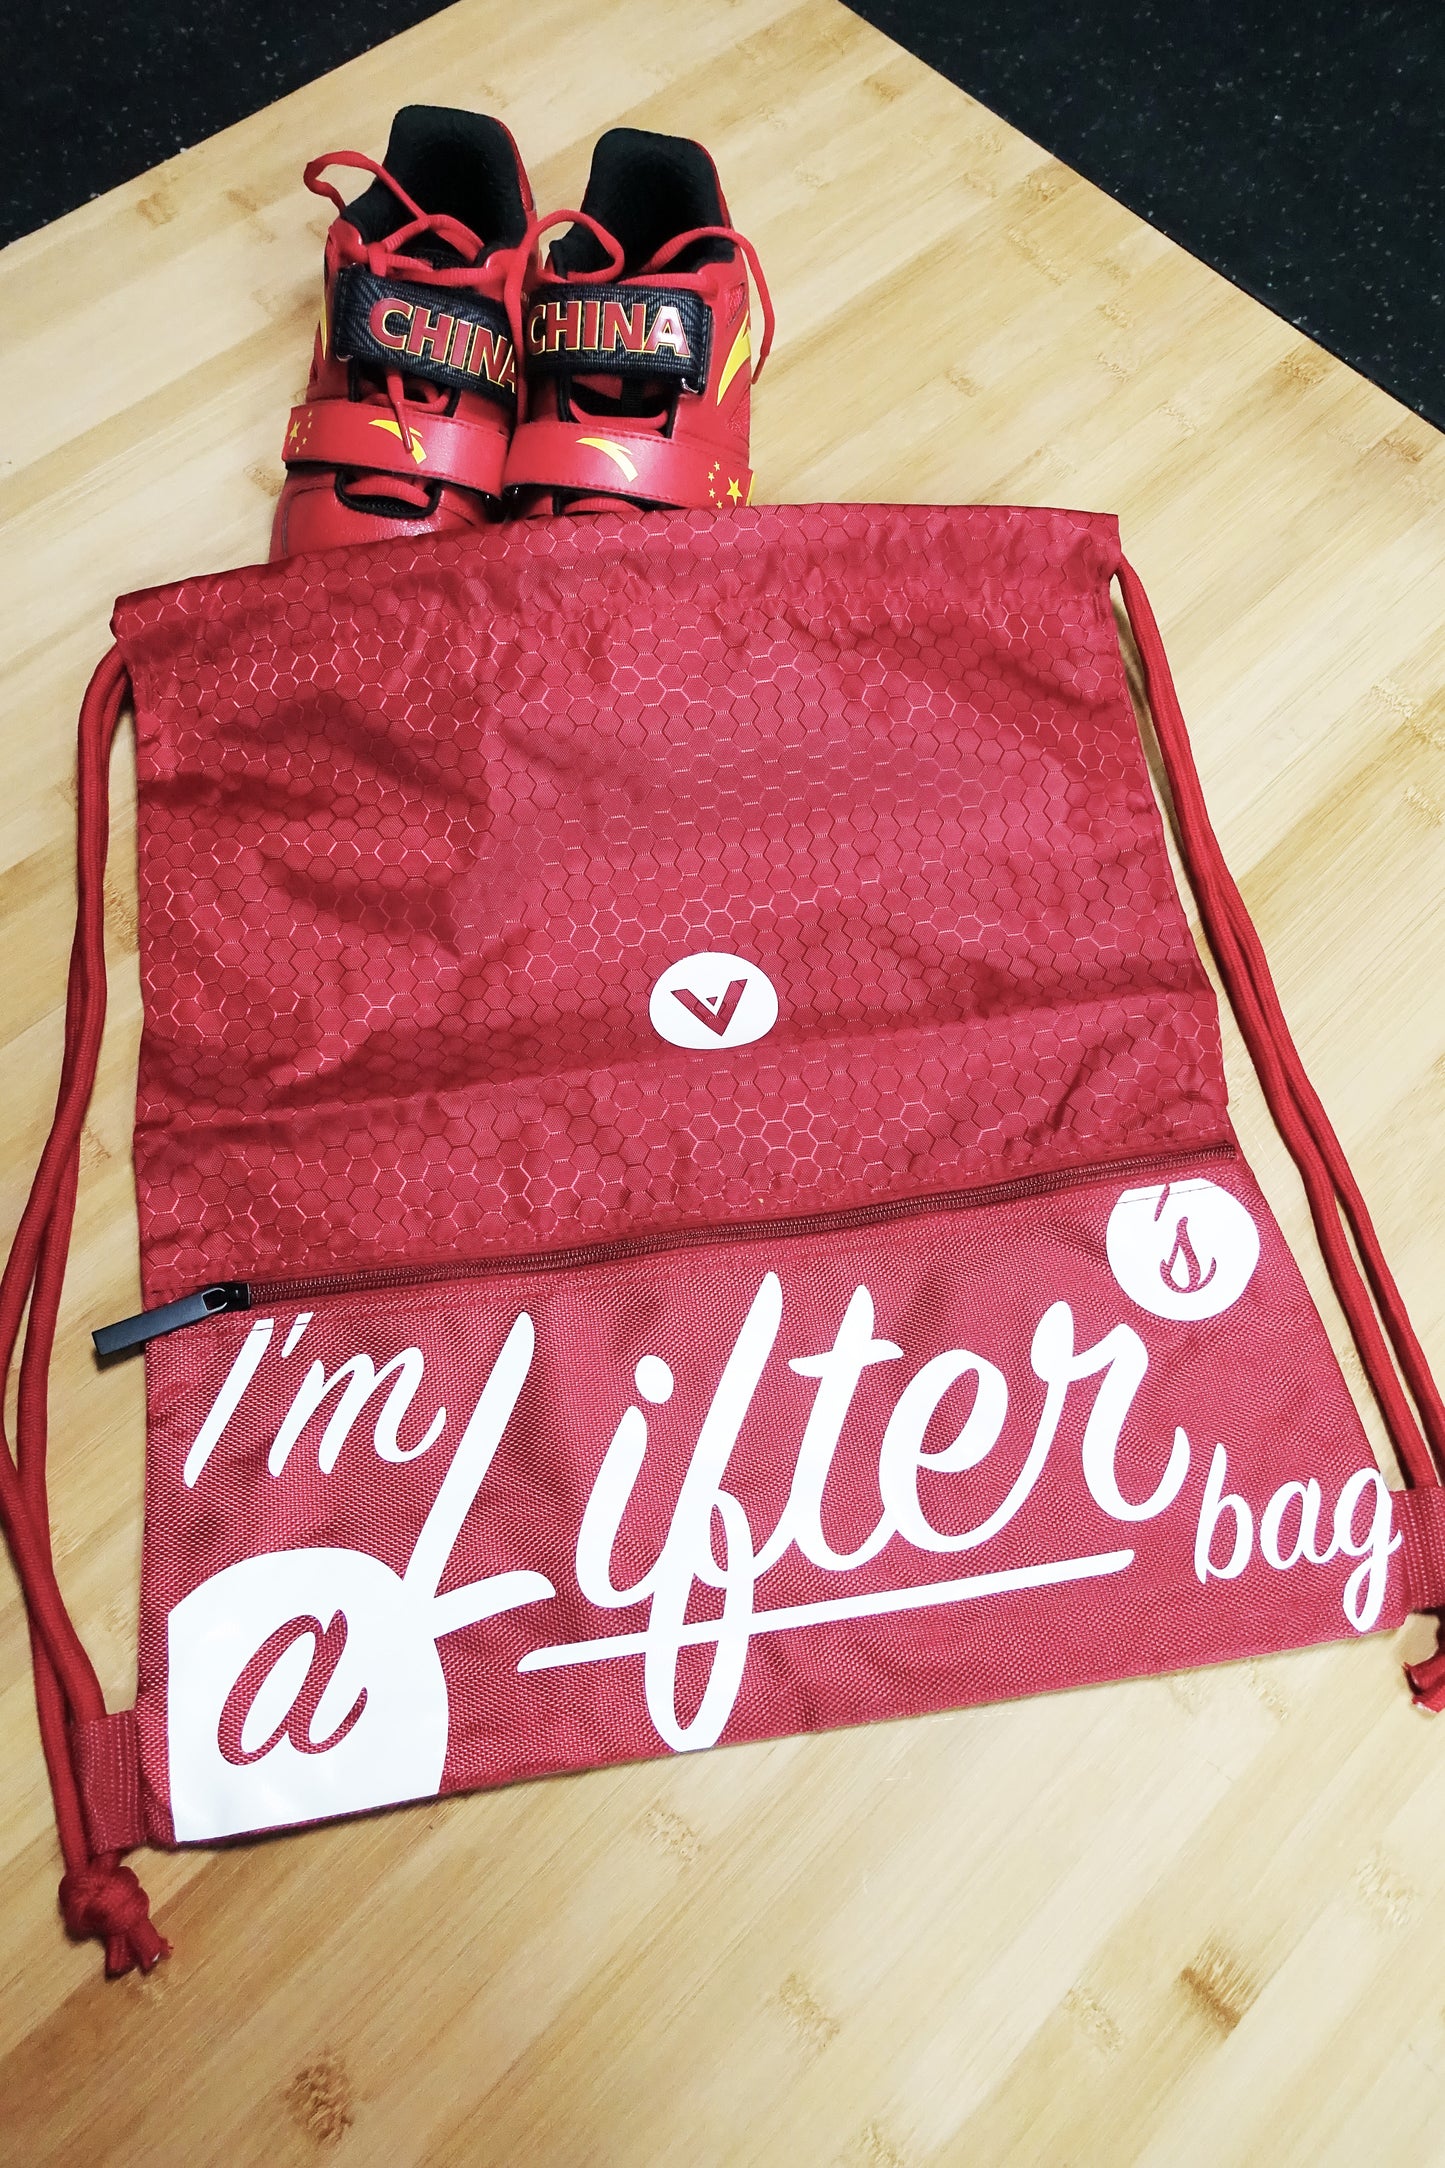 V I'm A Lifter's Bag